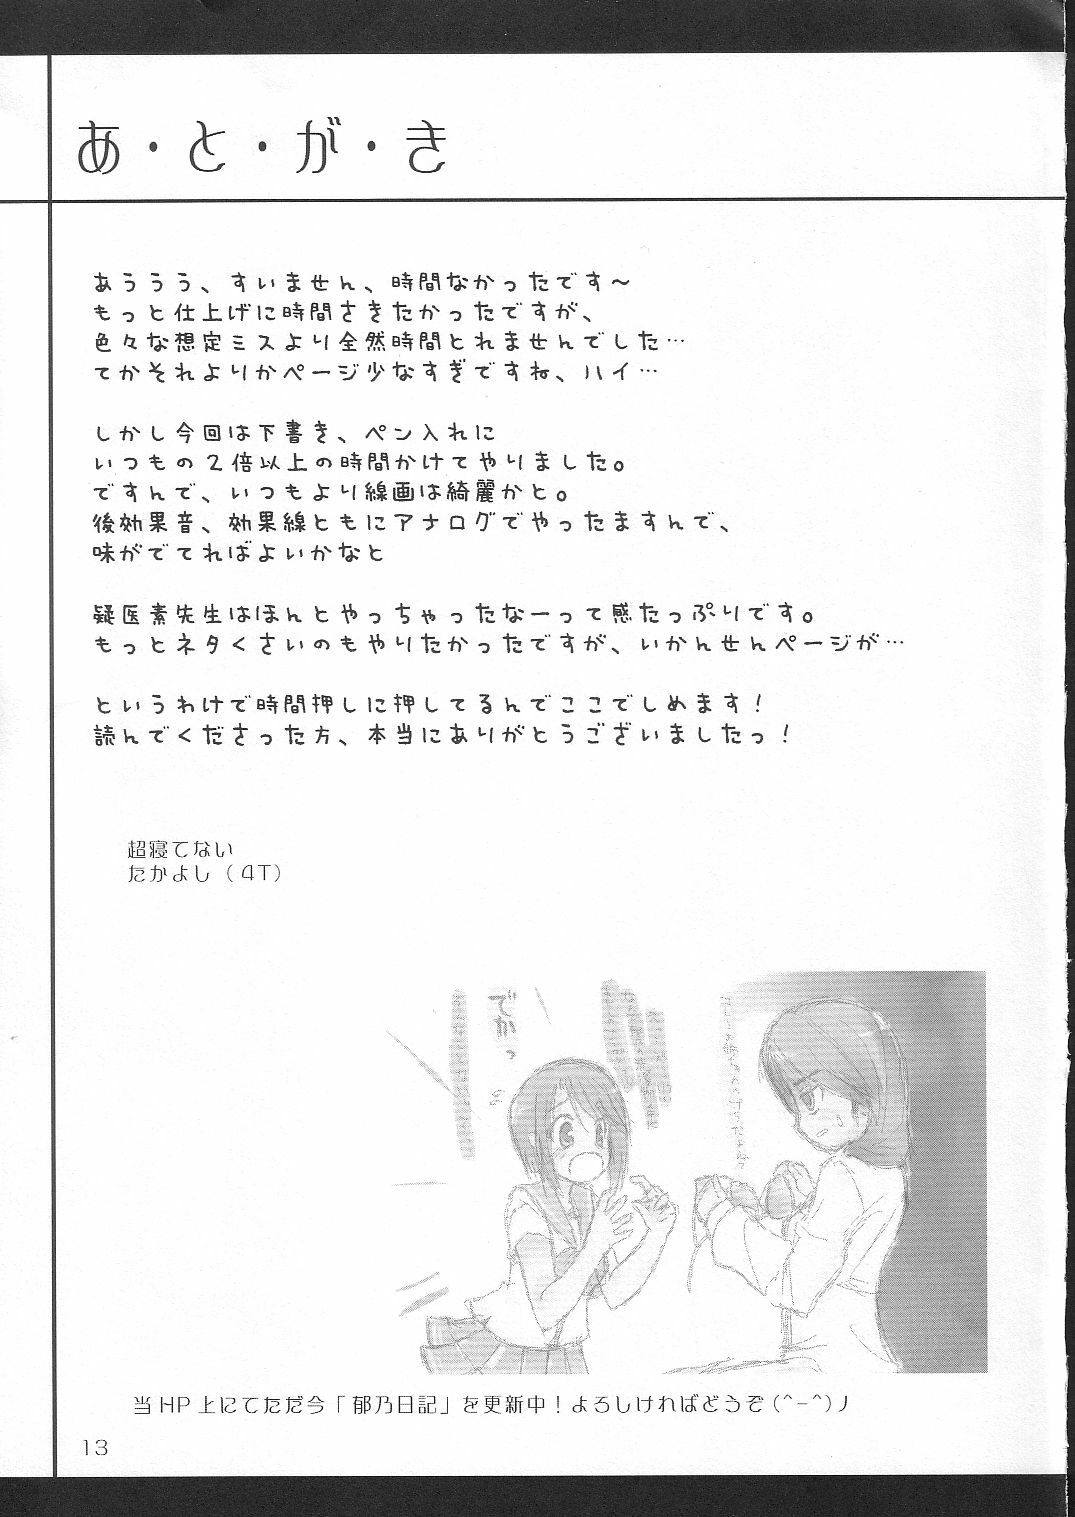 [4T] Ikuno Seikatsu Schmiz (To Heart 2) page 12 full